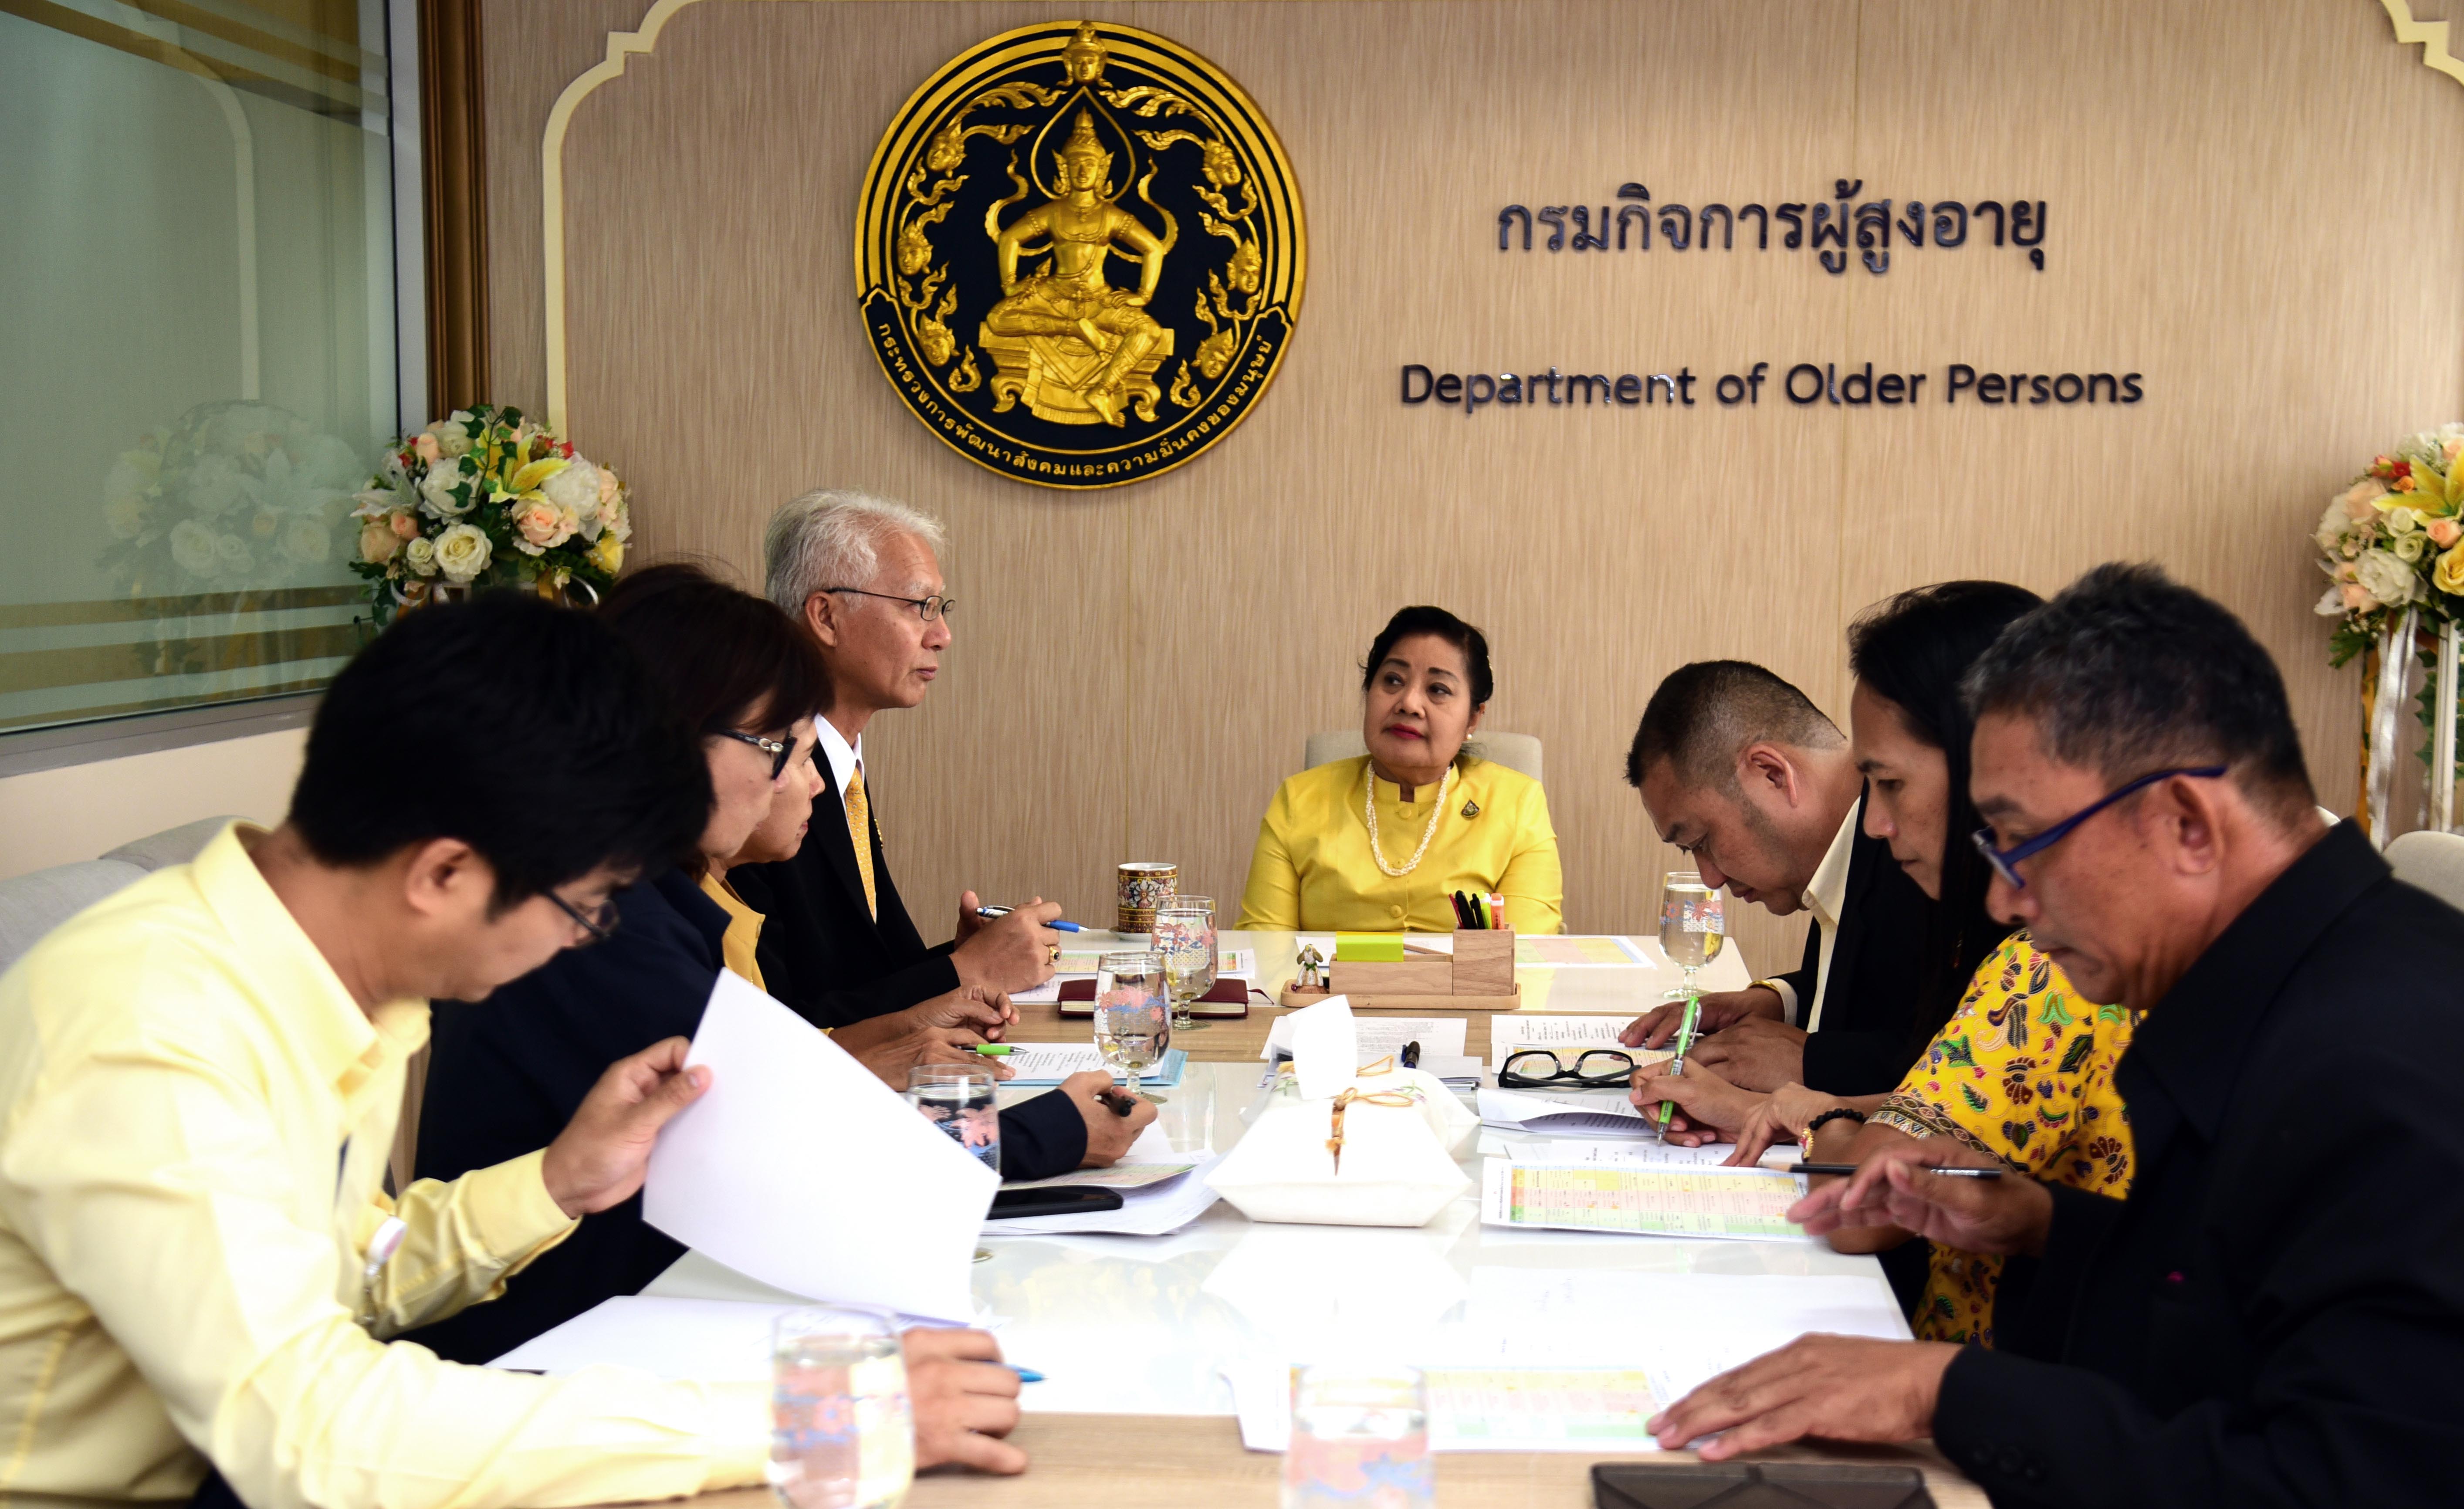 หารือร่วมกับผู้ตรวจราชการกระทรวง พม.   เกี่ยวกับการจัดเวทีเสวนา “ด้านผู้สูงอายุ”  ภายในงาน Thailand  Social Expo 2019